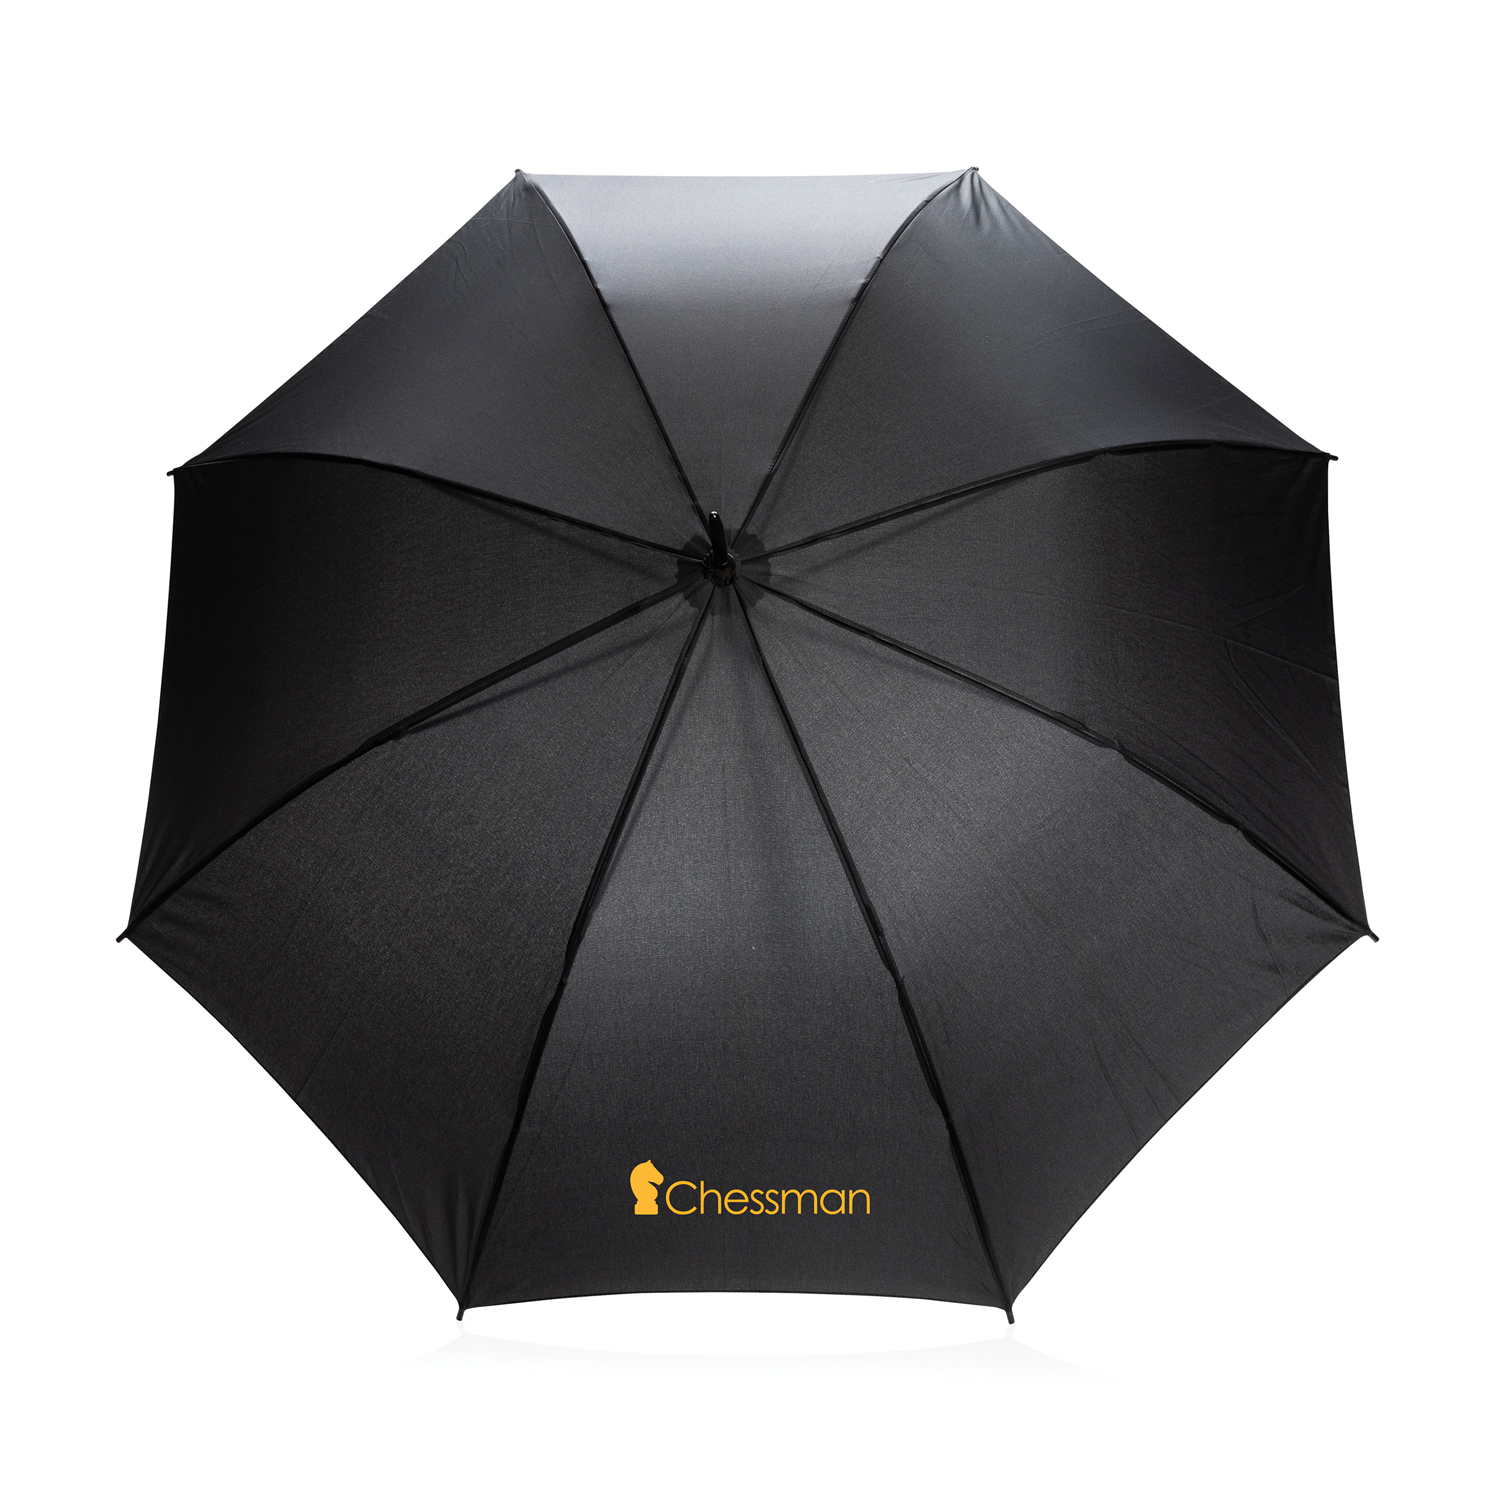 Автоматический зонт-трость Impact из RPET AWARE™, d103 см